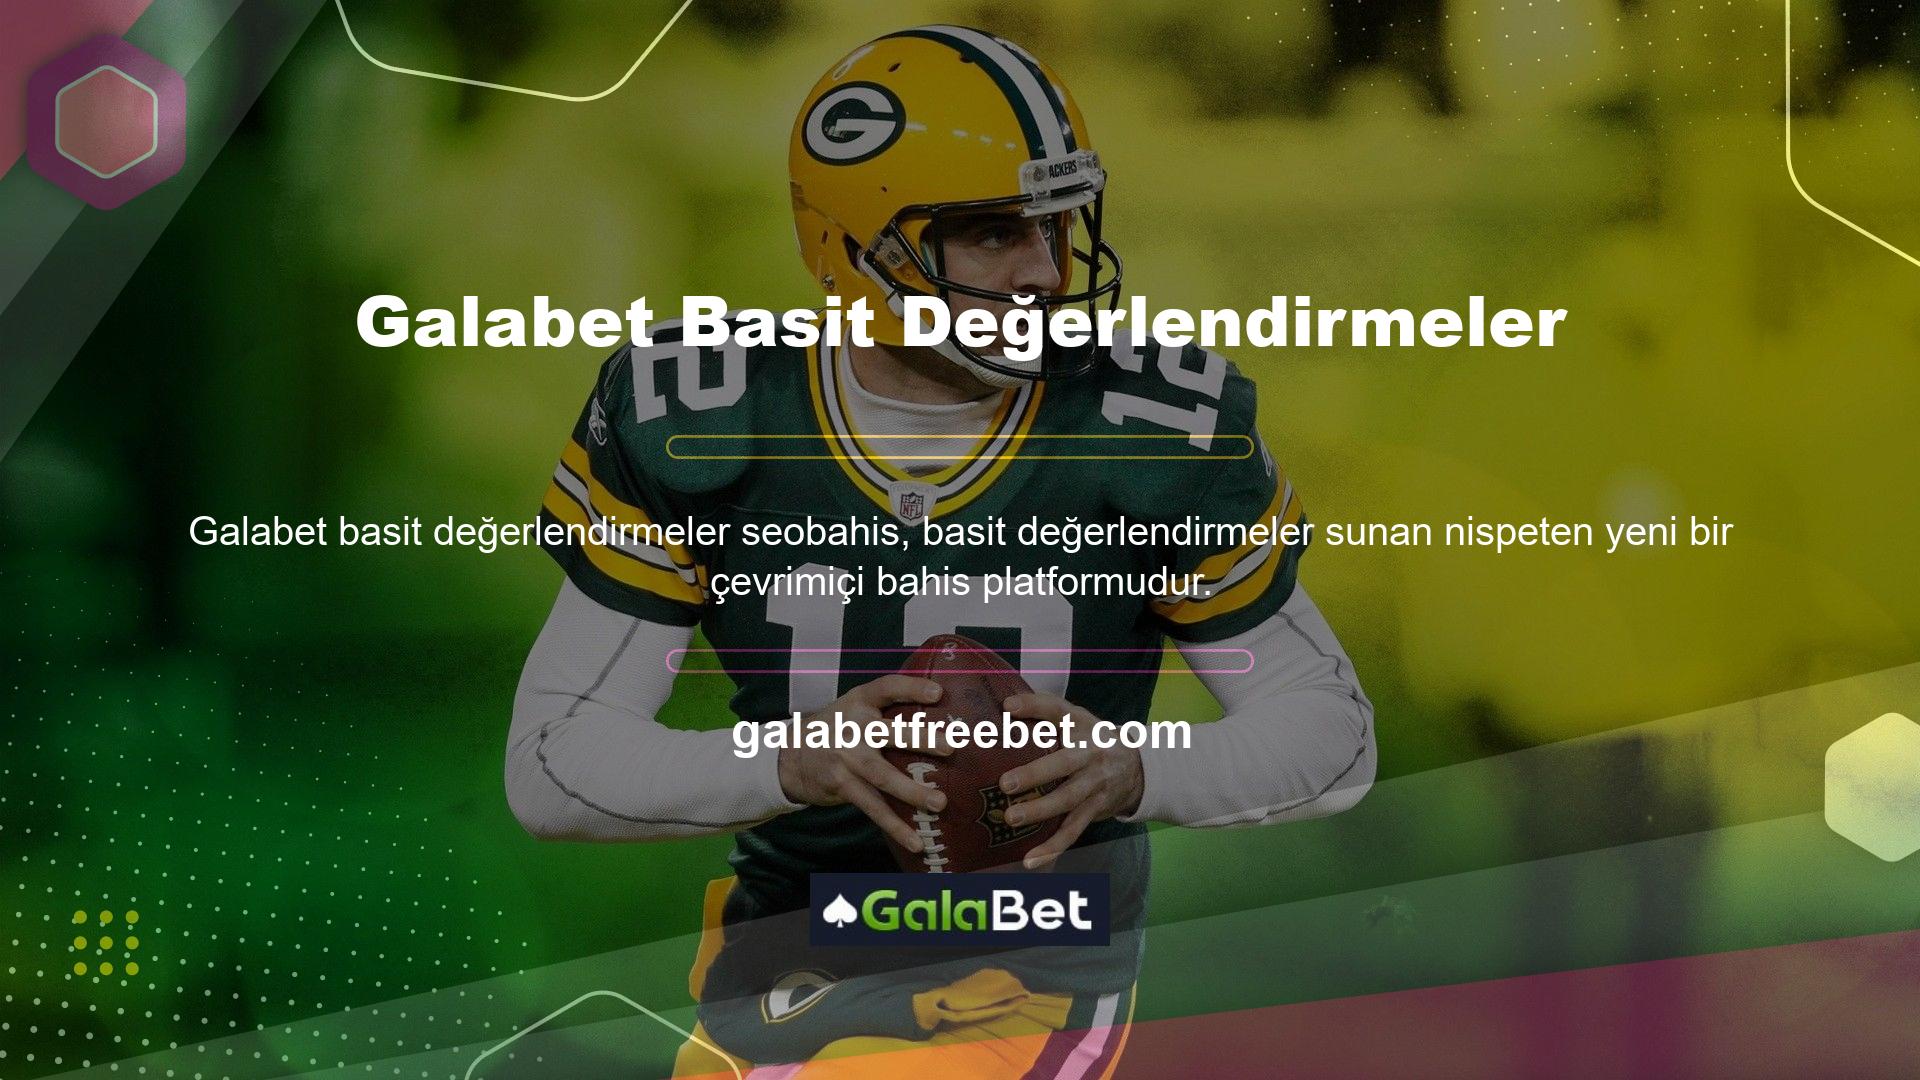 Galabet web sitesi tüm bilgileri üyelerine açıkça sunmaktadır